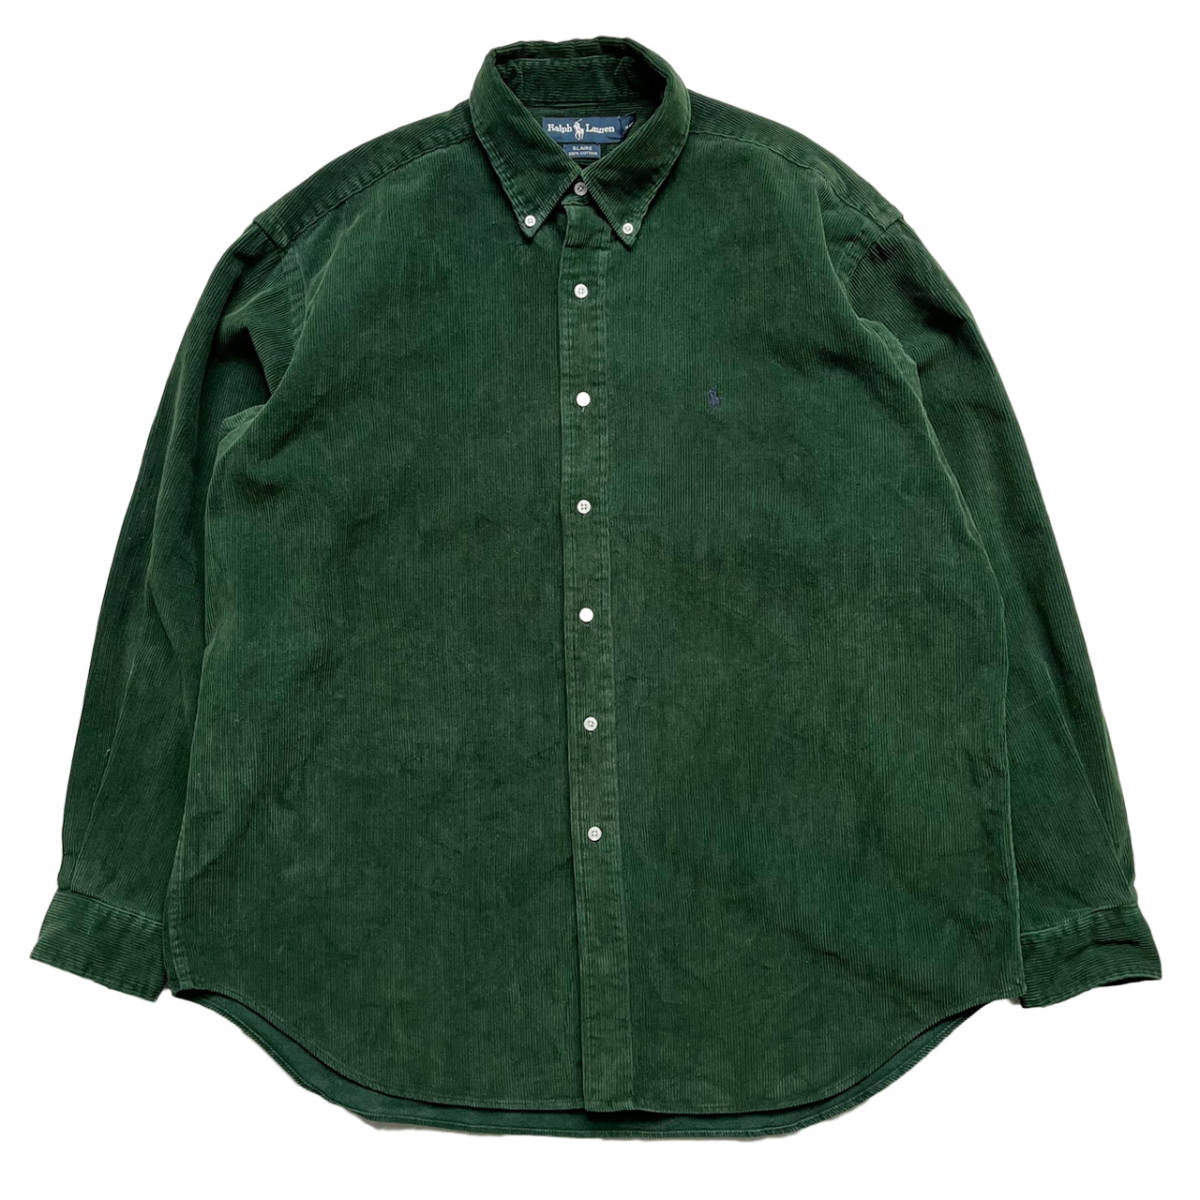 90s ポロラルフローレン コーデュロイ ボタンシャツ 長袖 緑 グリーン サイズ XL アメリカ古着